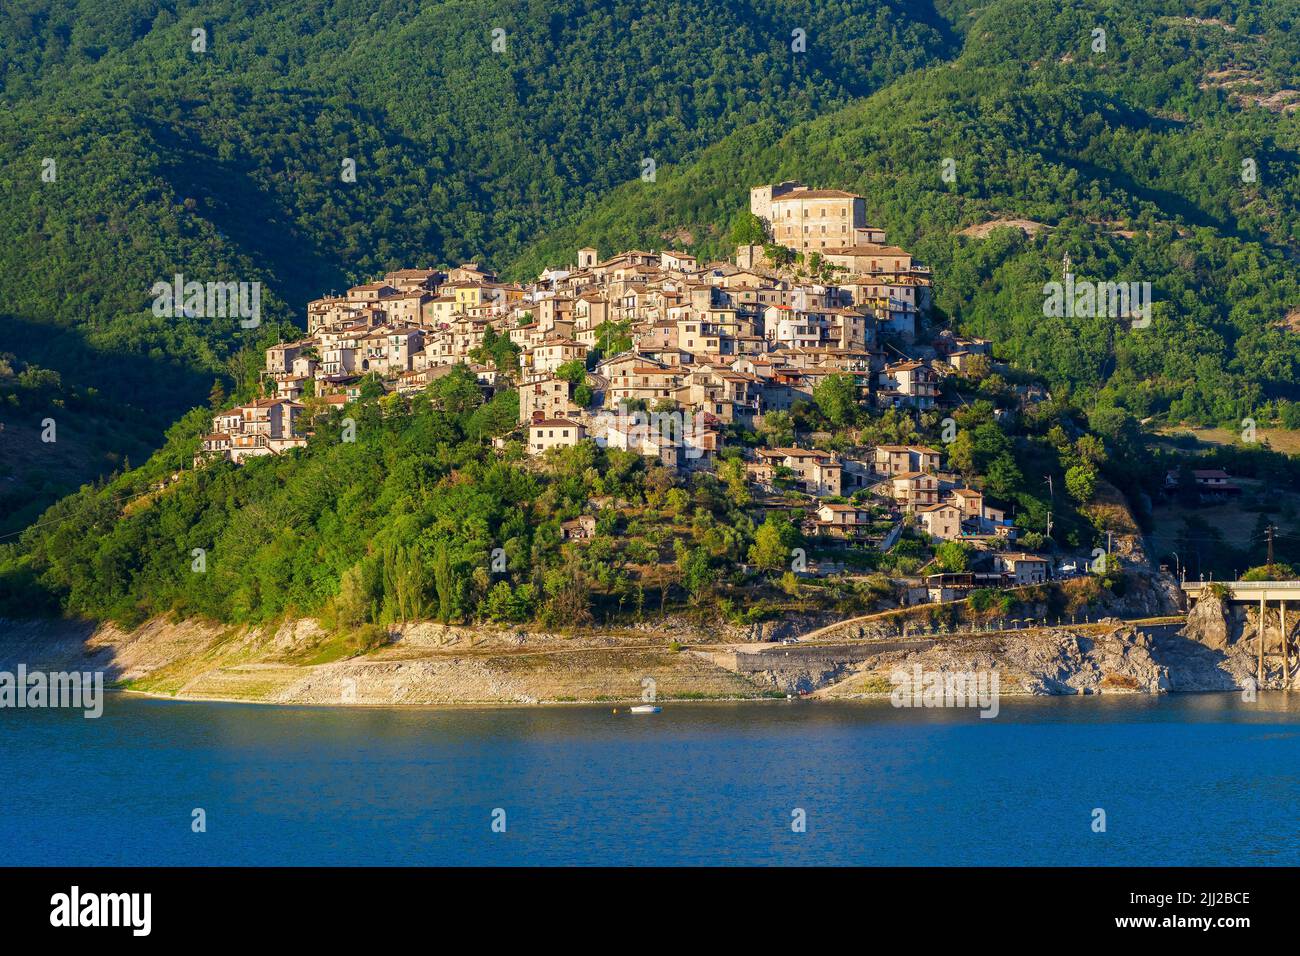 La petite ville de Castel di Tora et le lac de Turano - Rieti, Italie Banque D'Images